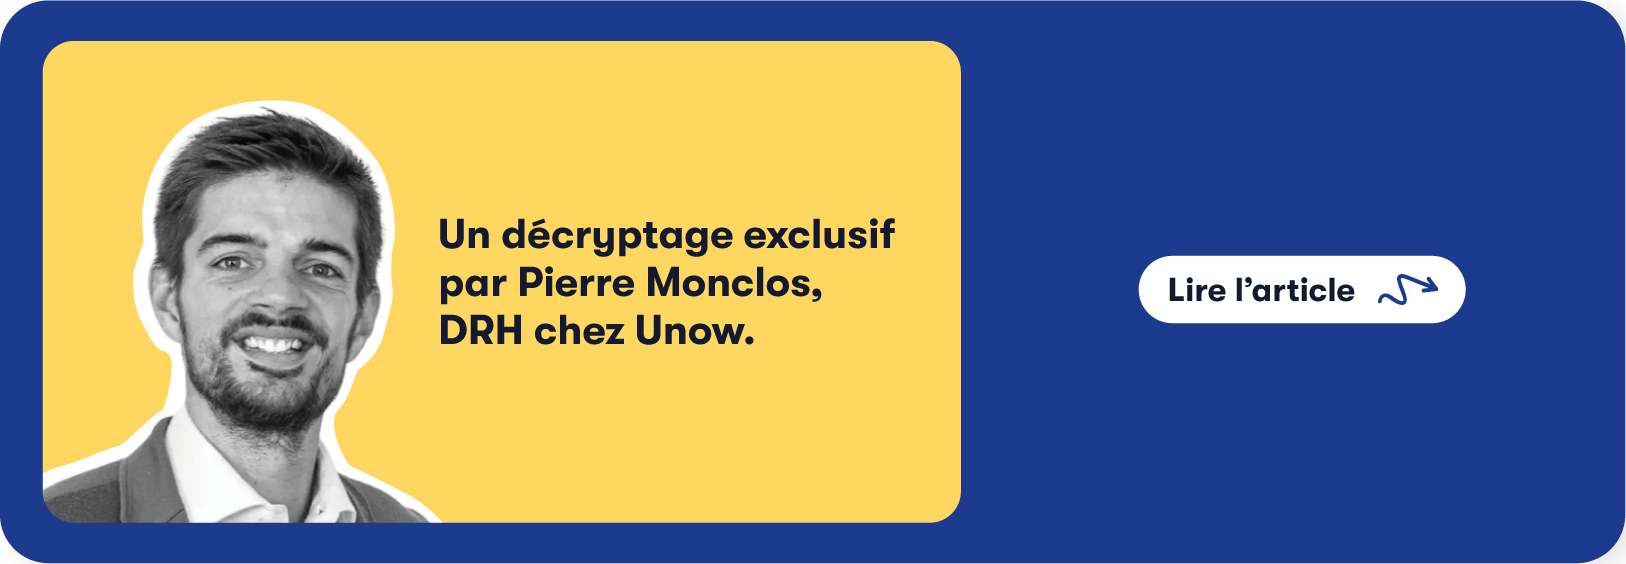 Un décryptage exclusif par Pierre Monclos, DRH chez Unow